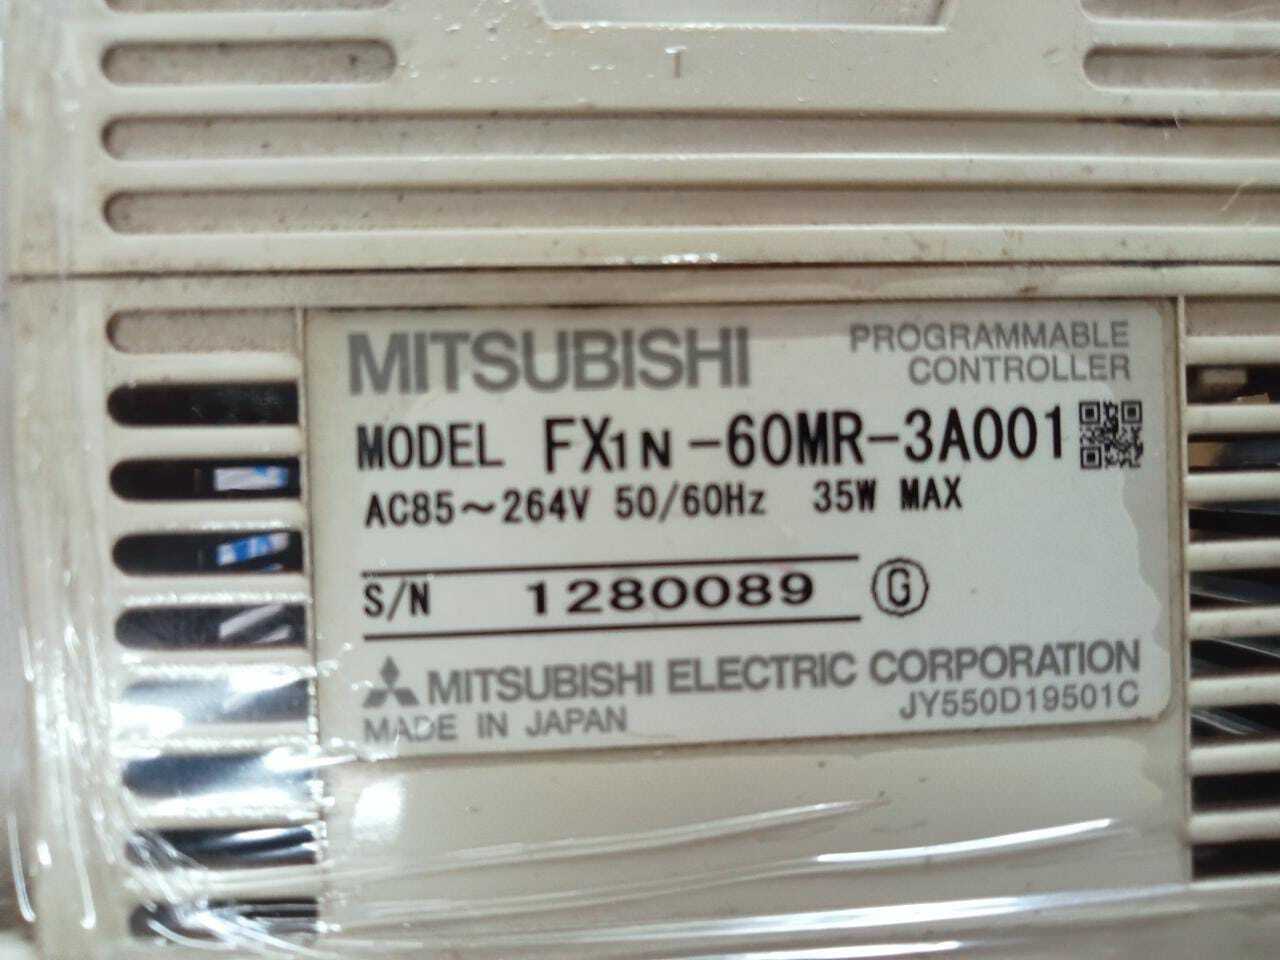 MITSUBISHI FX1N-60MR-3A001